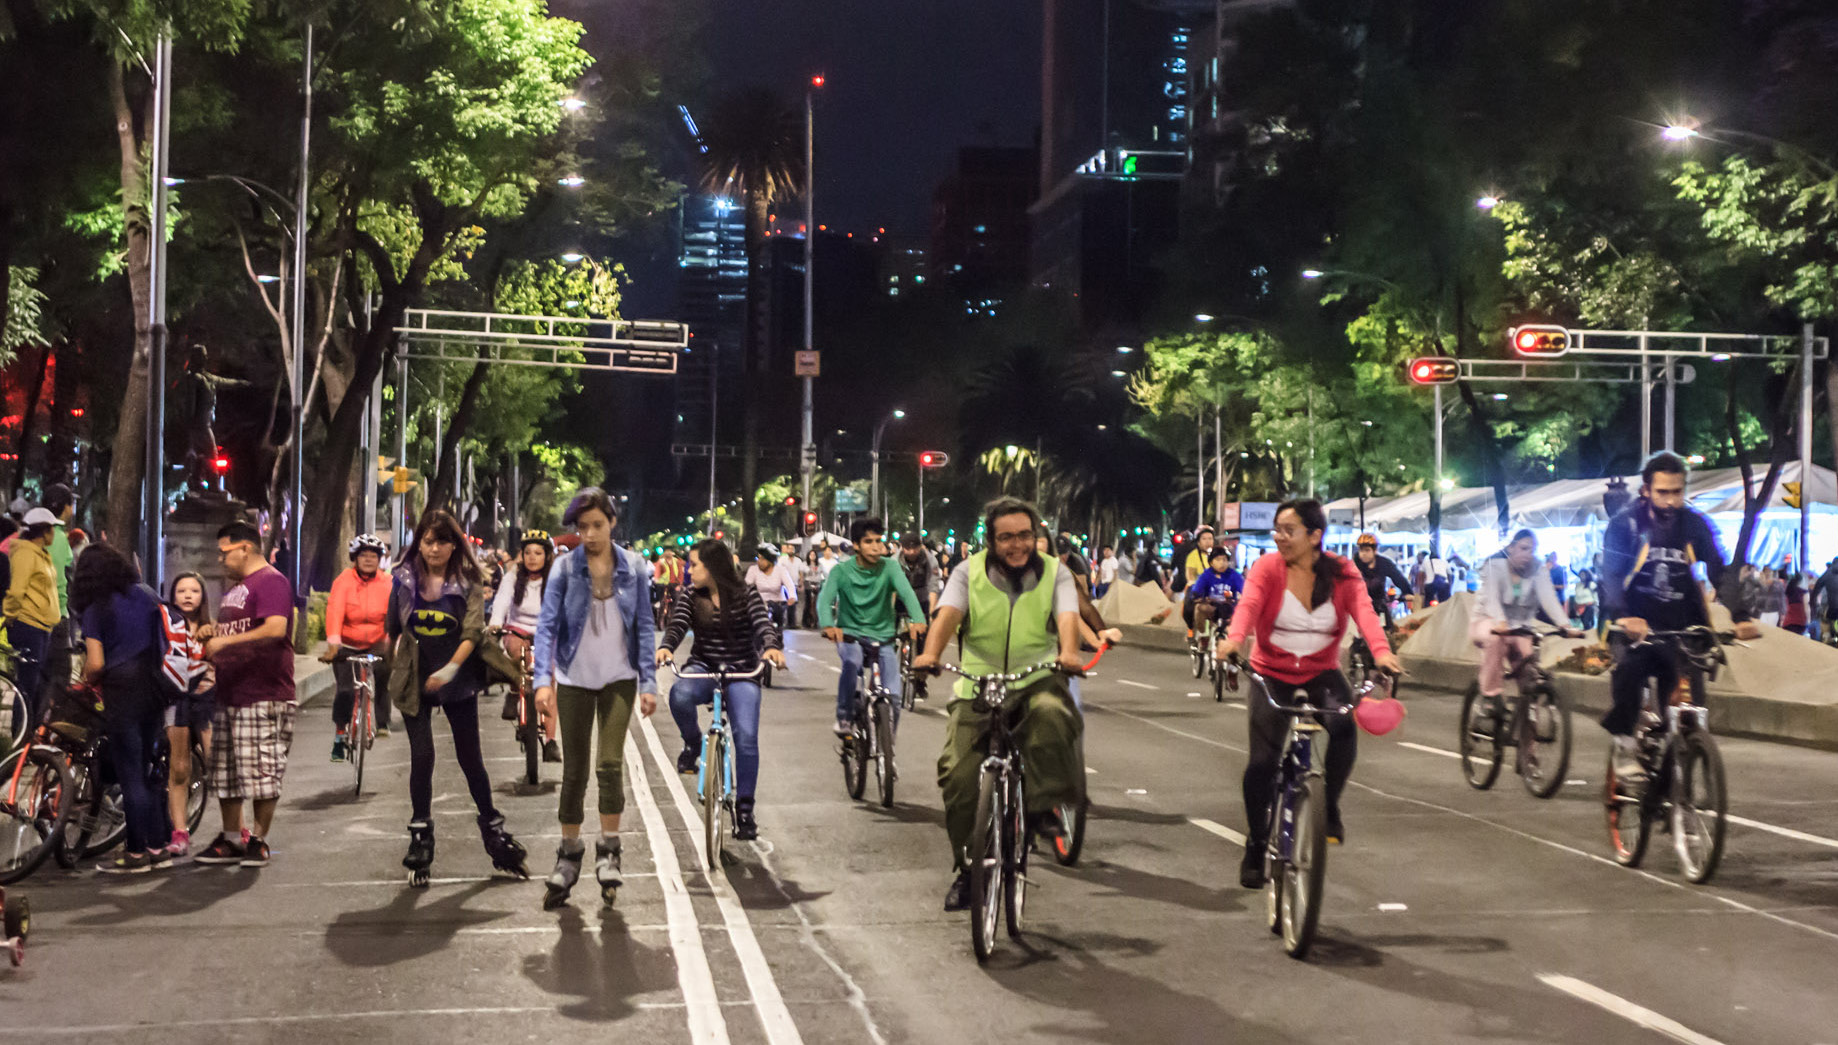 Habilitar espacios públicos para el uso de la bicicleta ha sido fundamental AUMENTO